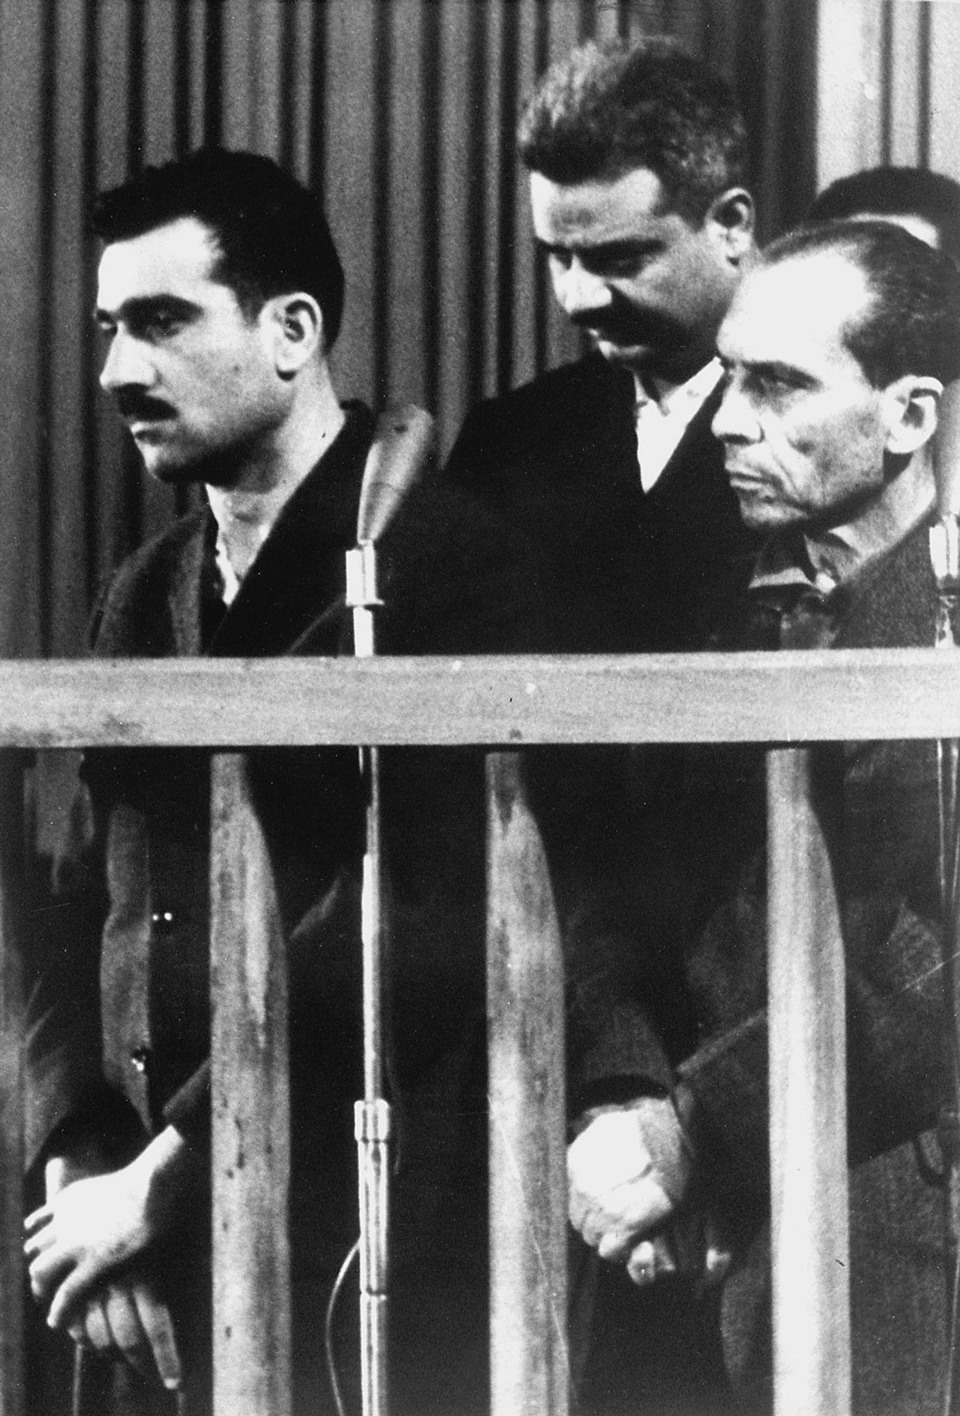 صورة التقطت في التاسع من شهر مايو سنة 1965 تظهر الجاسوس الإسرائيلي (إيلي كوهين) على اليسار واثنين من المعتقلين لم يتم تحديد هويتهما، خلال محاكمتهم جميعا في دمشق، وذلك قبل عشرة أيام من إعدامه.